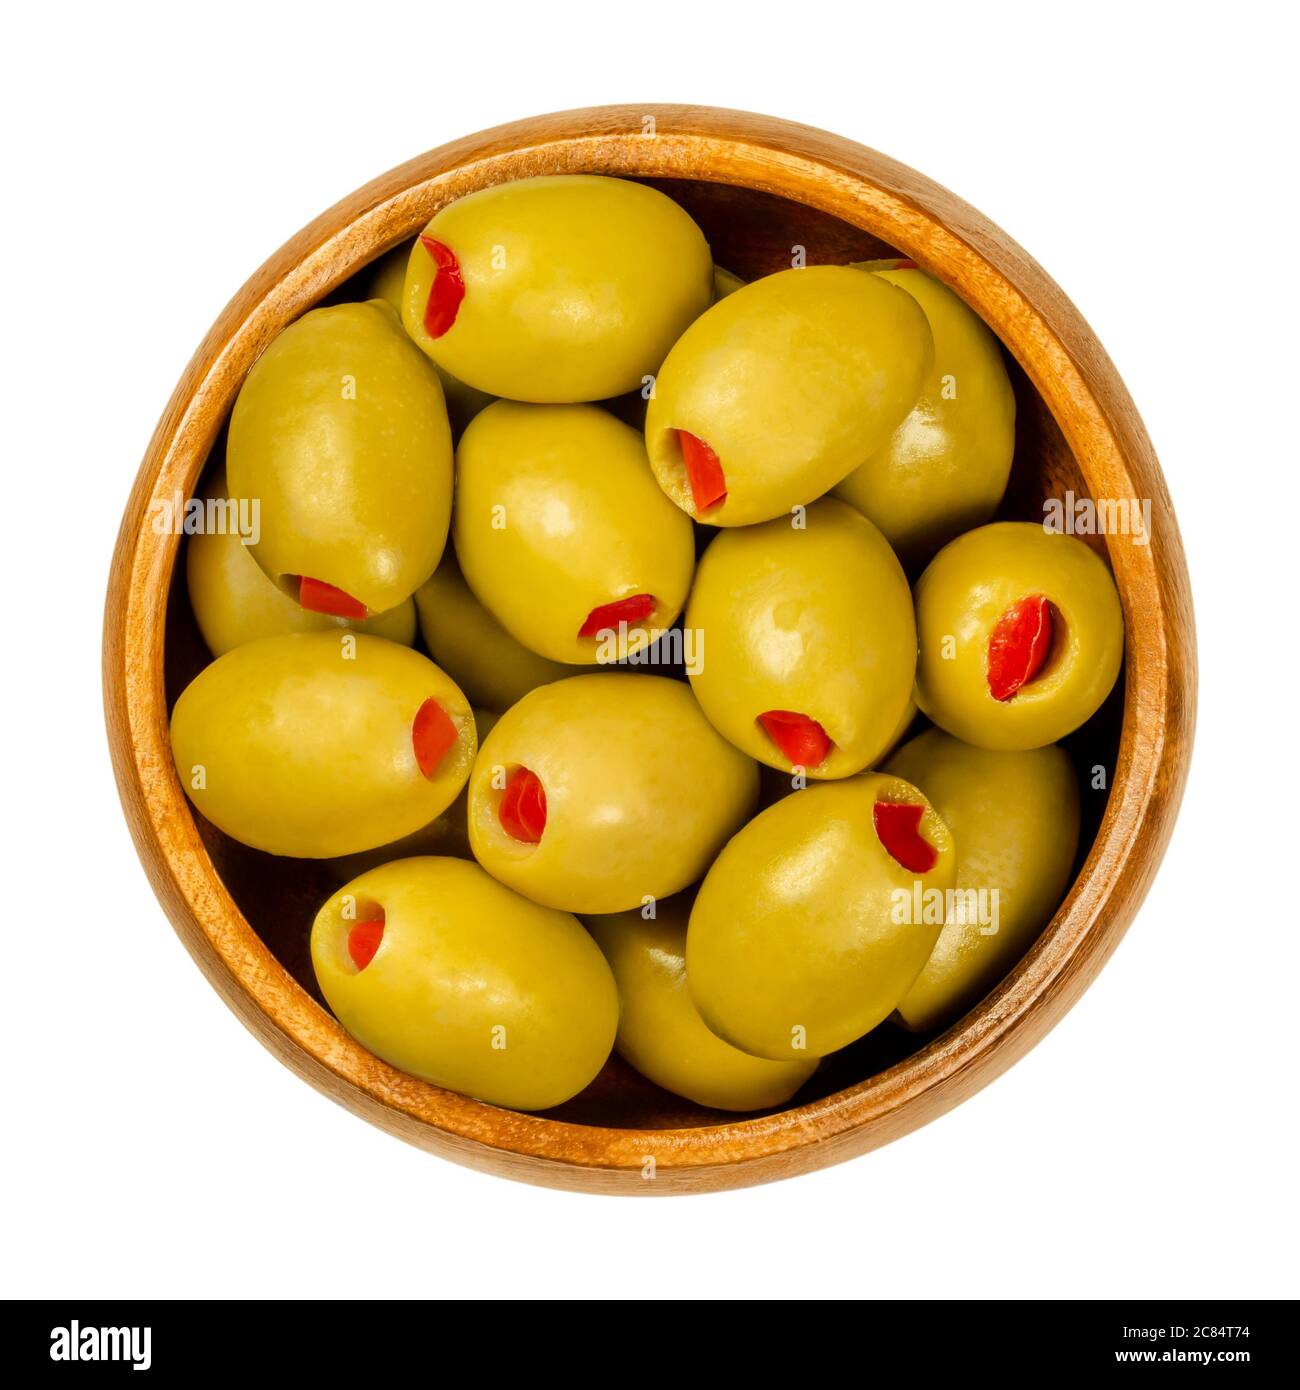 Peperone dolce farcito olive verdi in ciotola di legno. Olive europee grandi, frutti di Olea europaea, ripieni di fette di peperone rosso sottaceto. Foto Stock